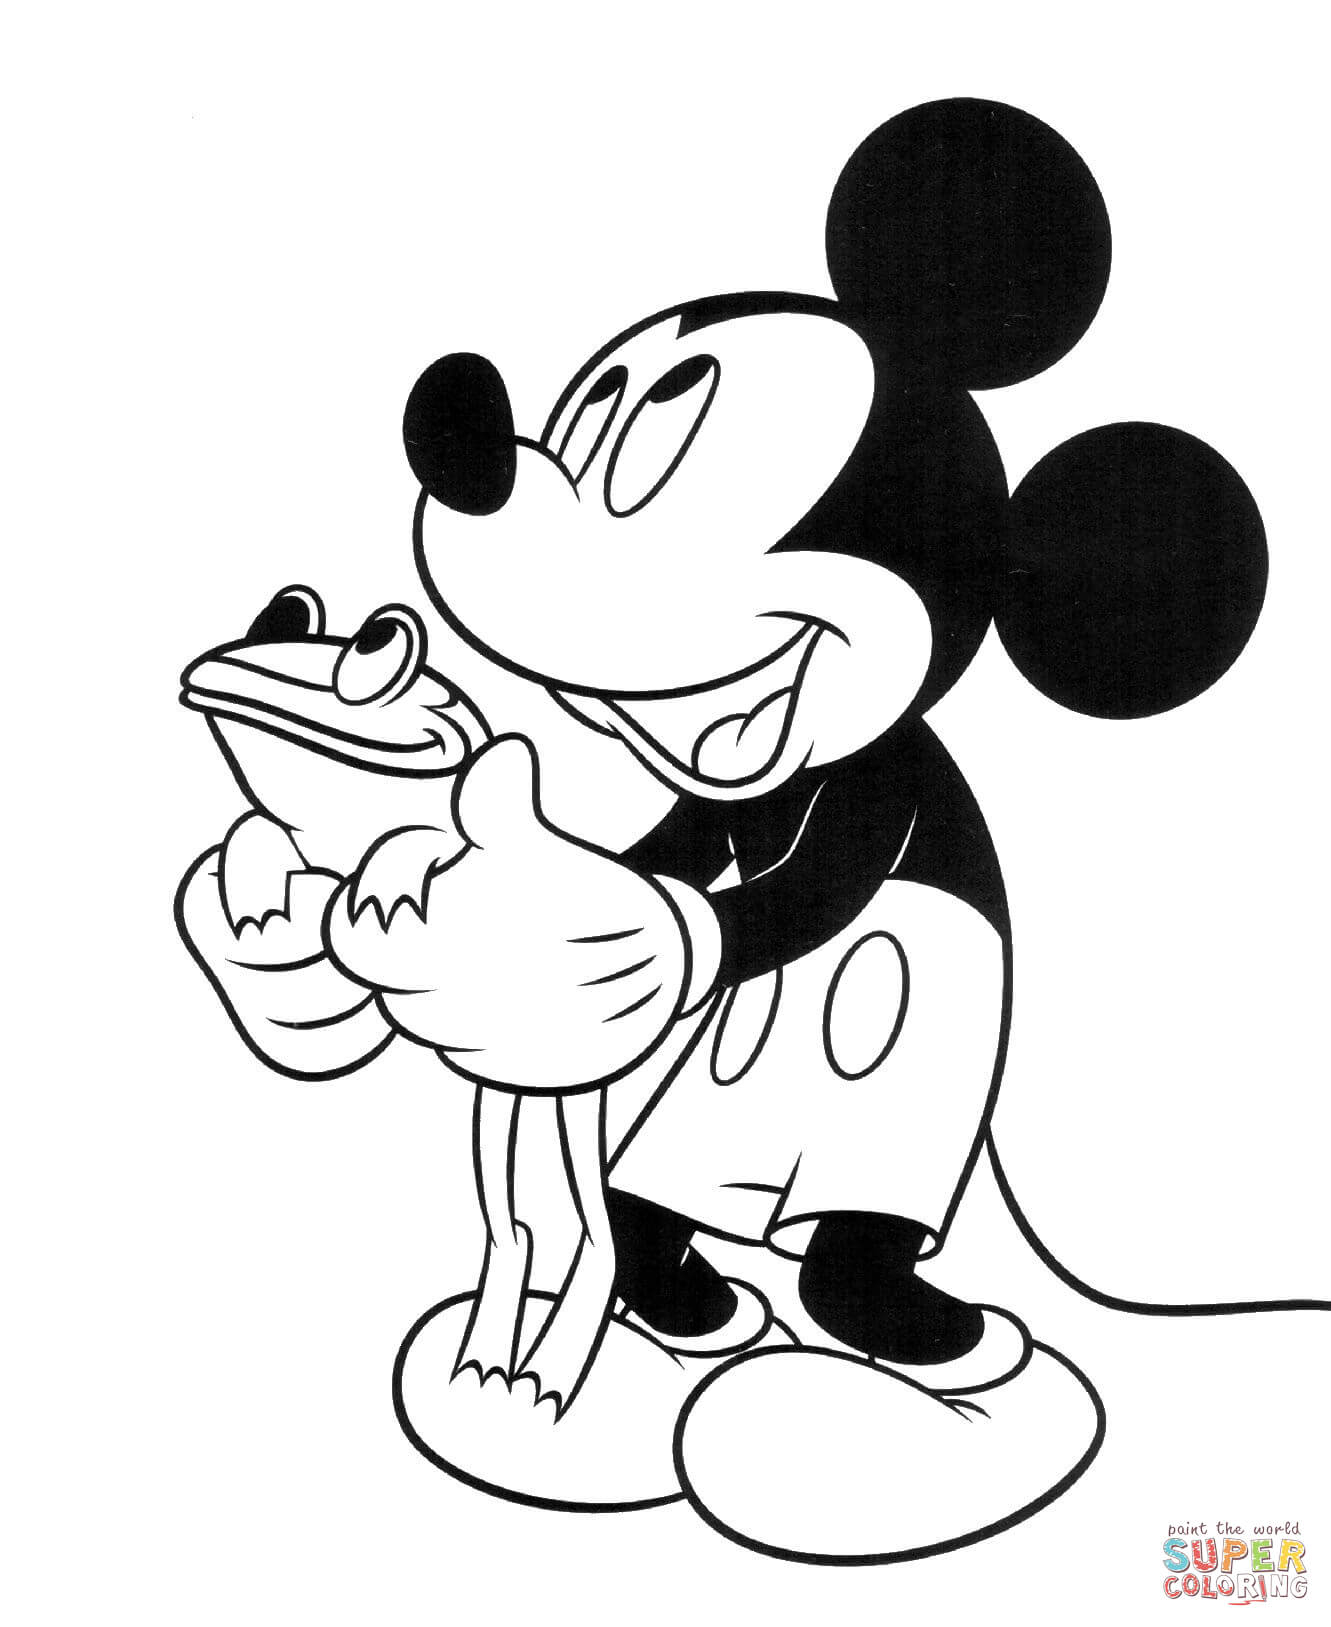 Ausmalbilder Disney Micky Maus Zum Ausdrucken : Micky maus ausmalbilder